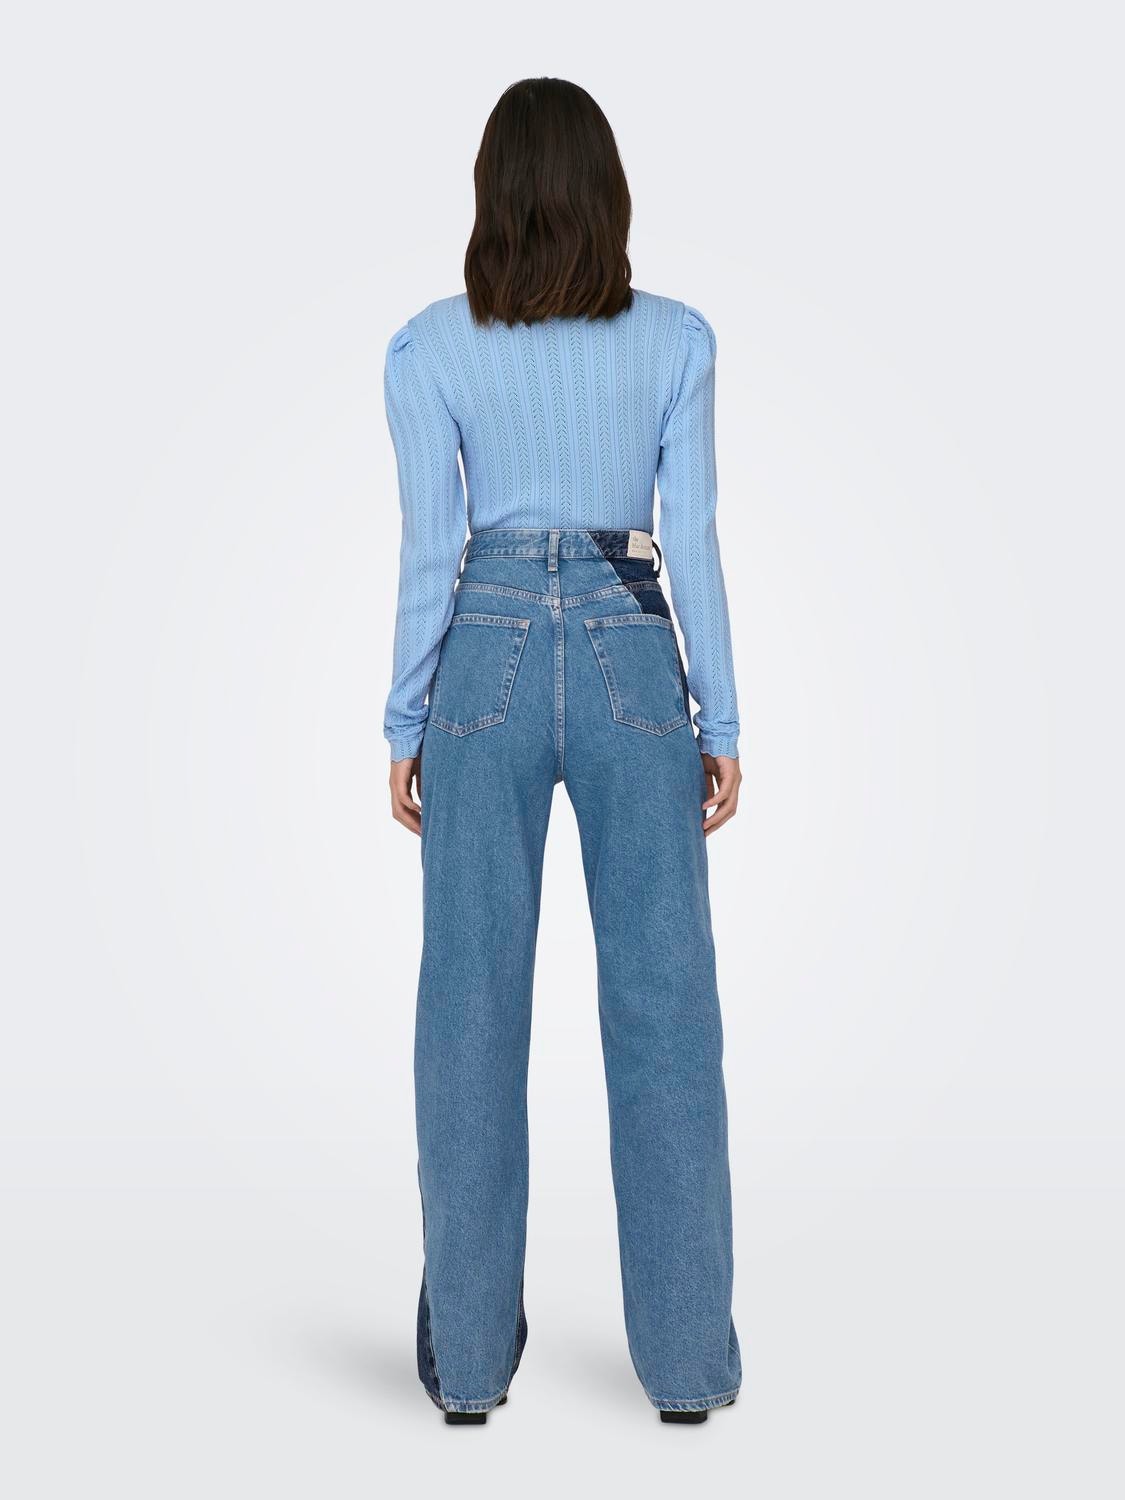 ONLY Straight fit High waist Jeans -Dark Blue Denim - 15297044